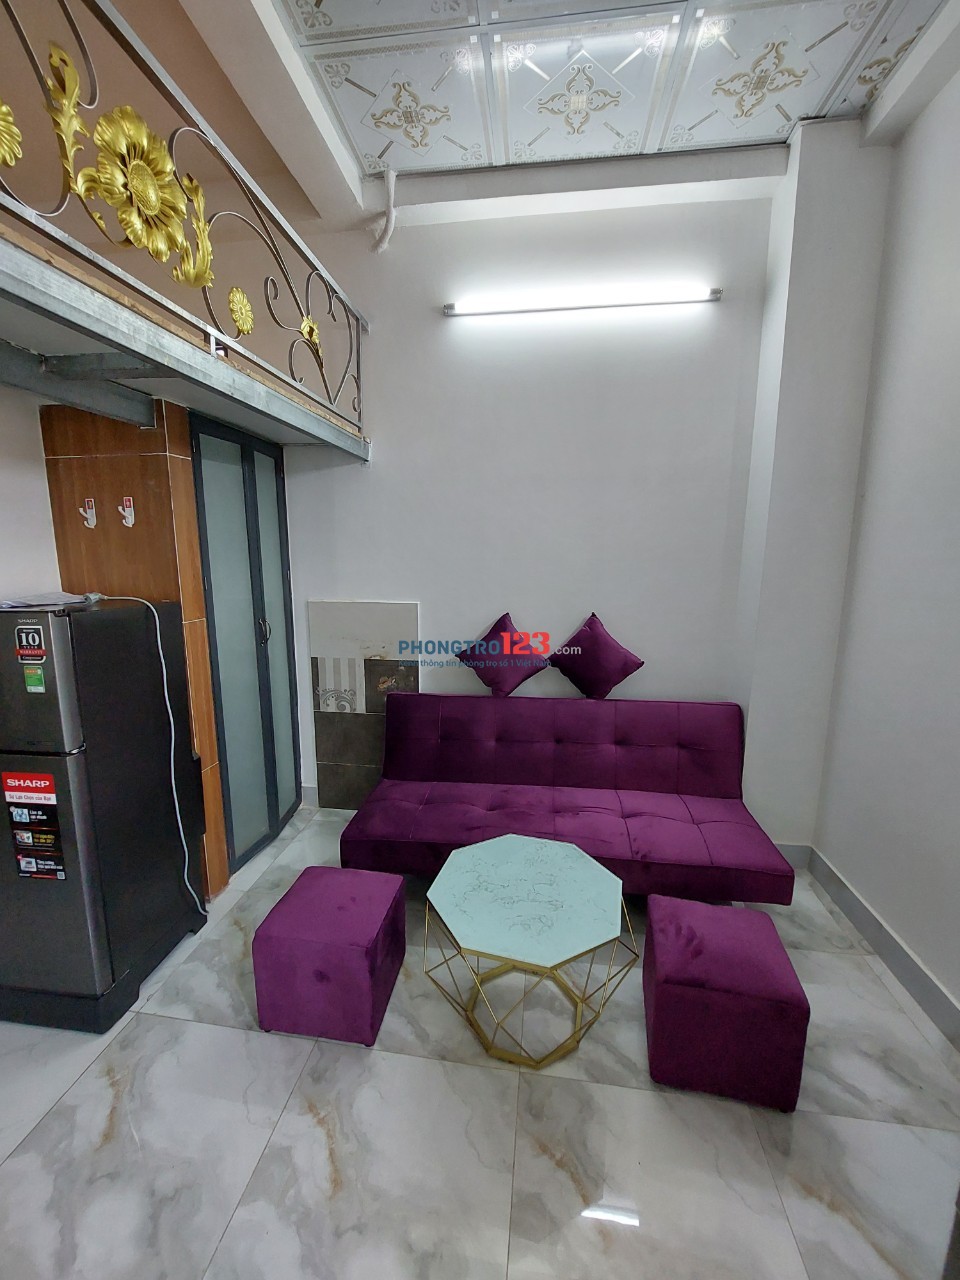 Phòng duplex đầy đủ tiện nghi gần Tôn Đức Thắng, RMIT, Đại học Ngoại Thương quận 7. Gần Phú Mỹ Hưng, Cresent Mall